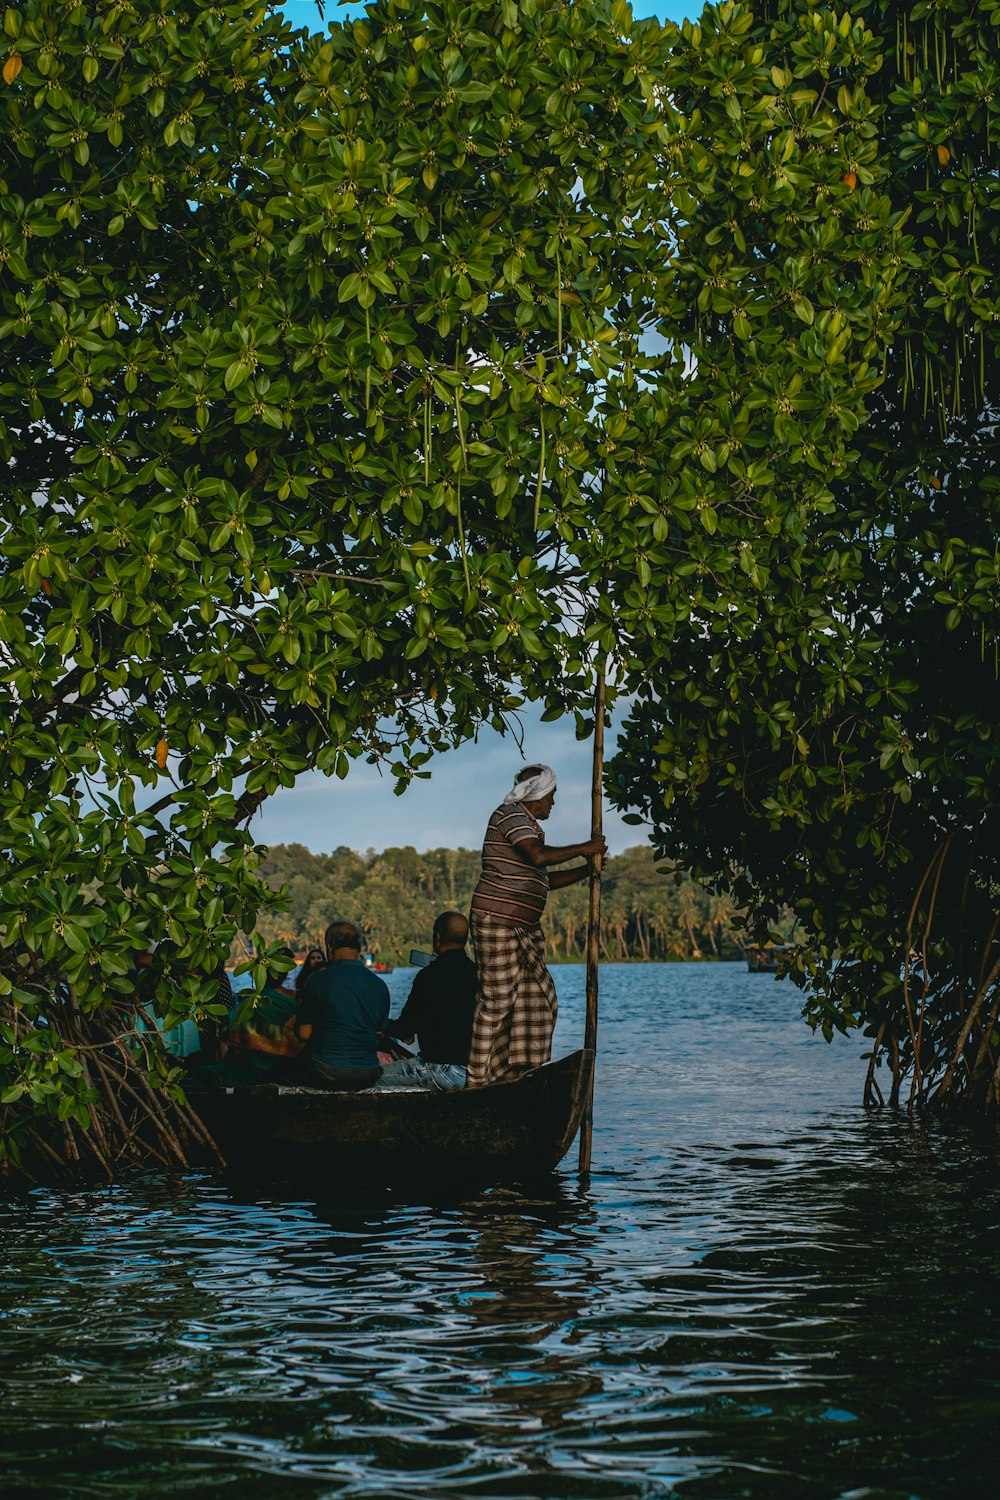 uma pessoa em um barco em um rio com pessoas nele